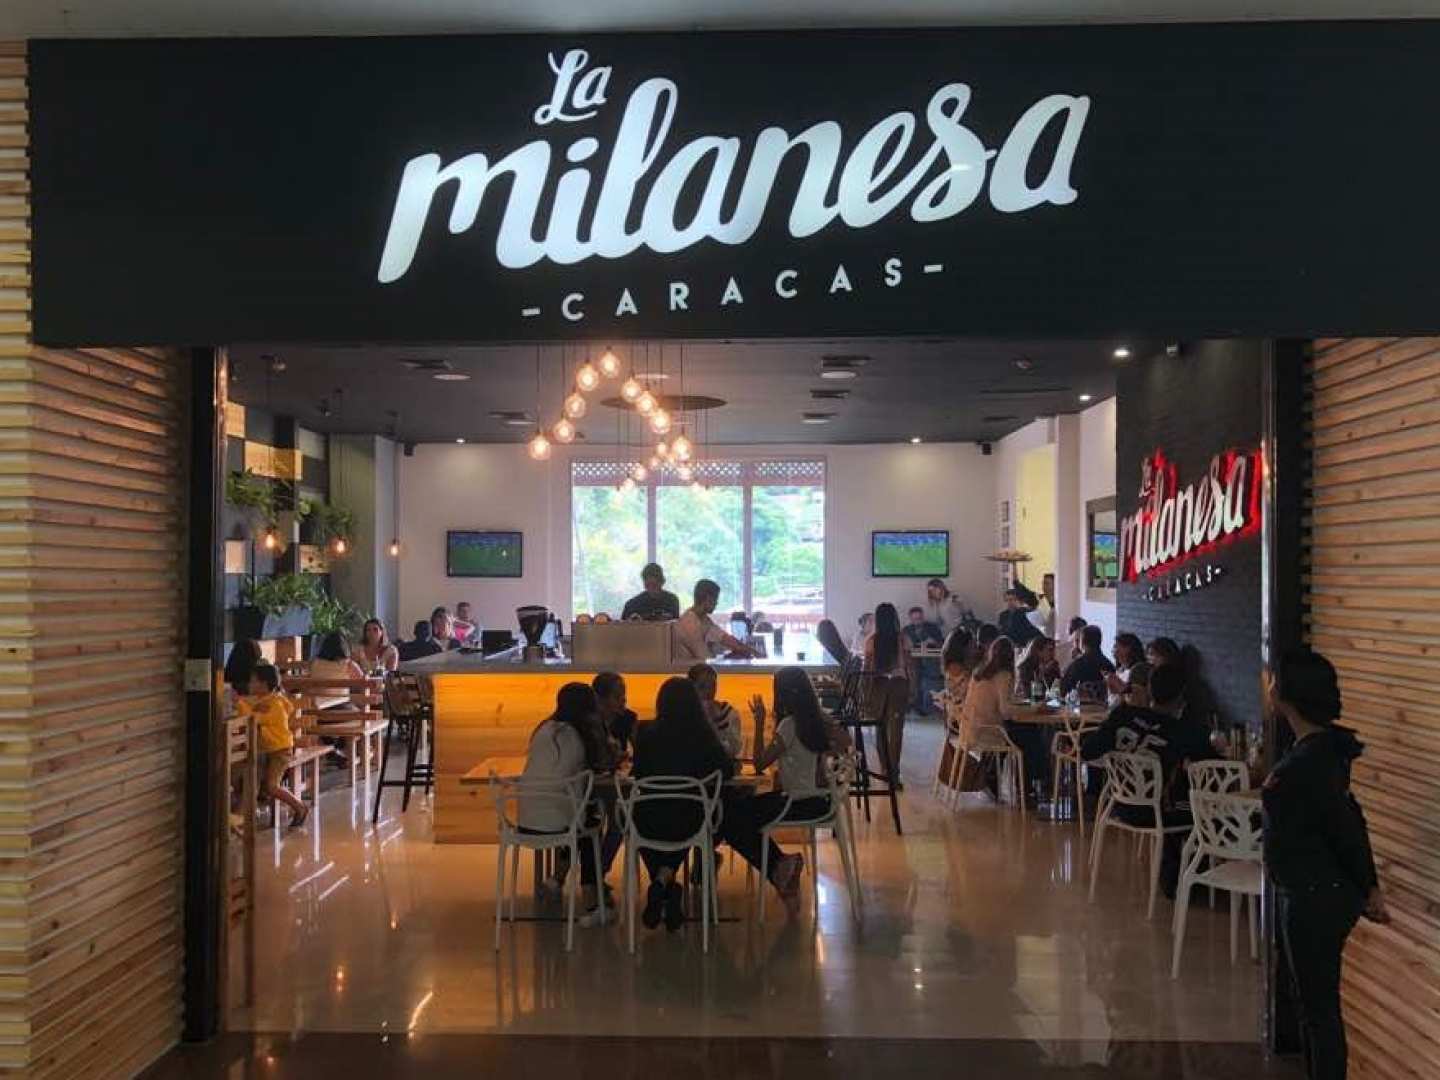 La Milanesa Caracas (El Hatillo)